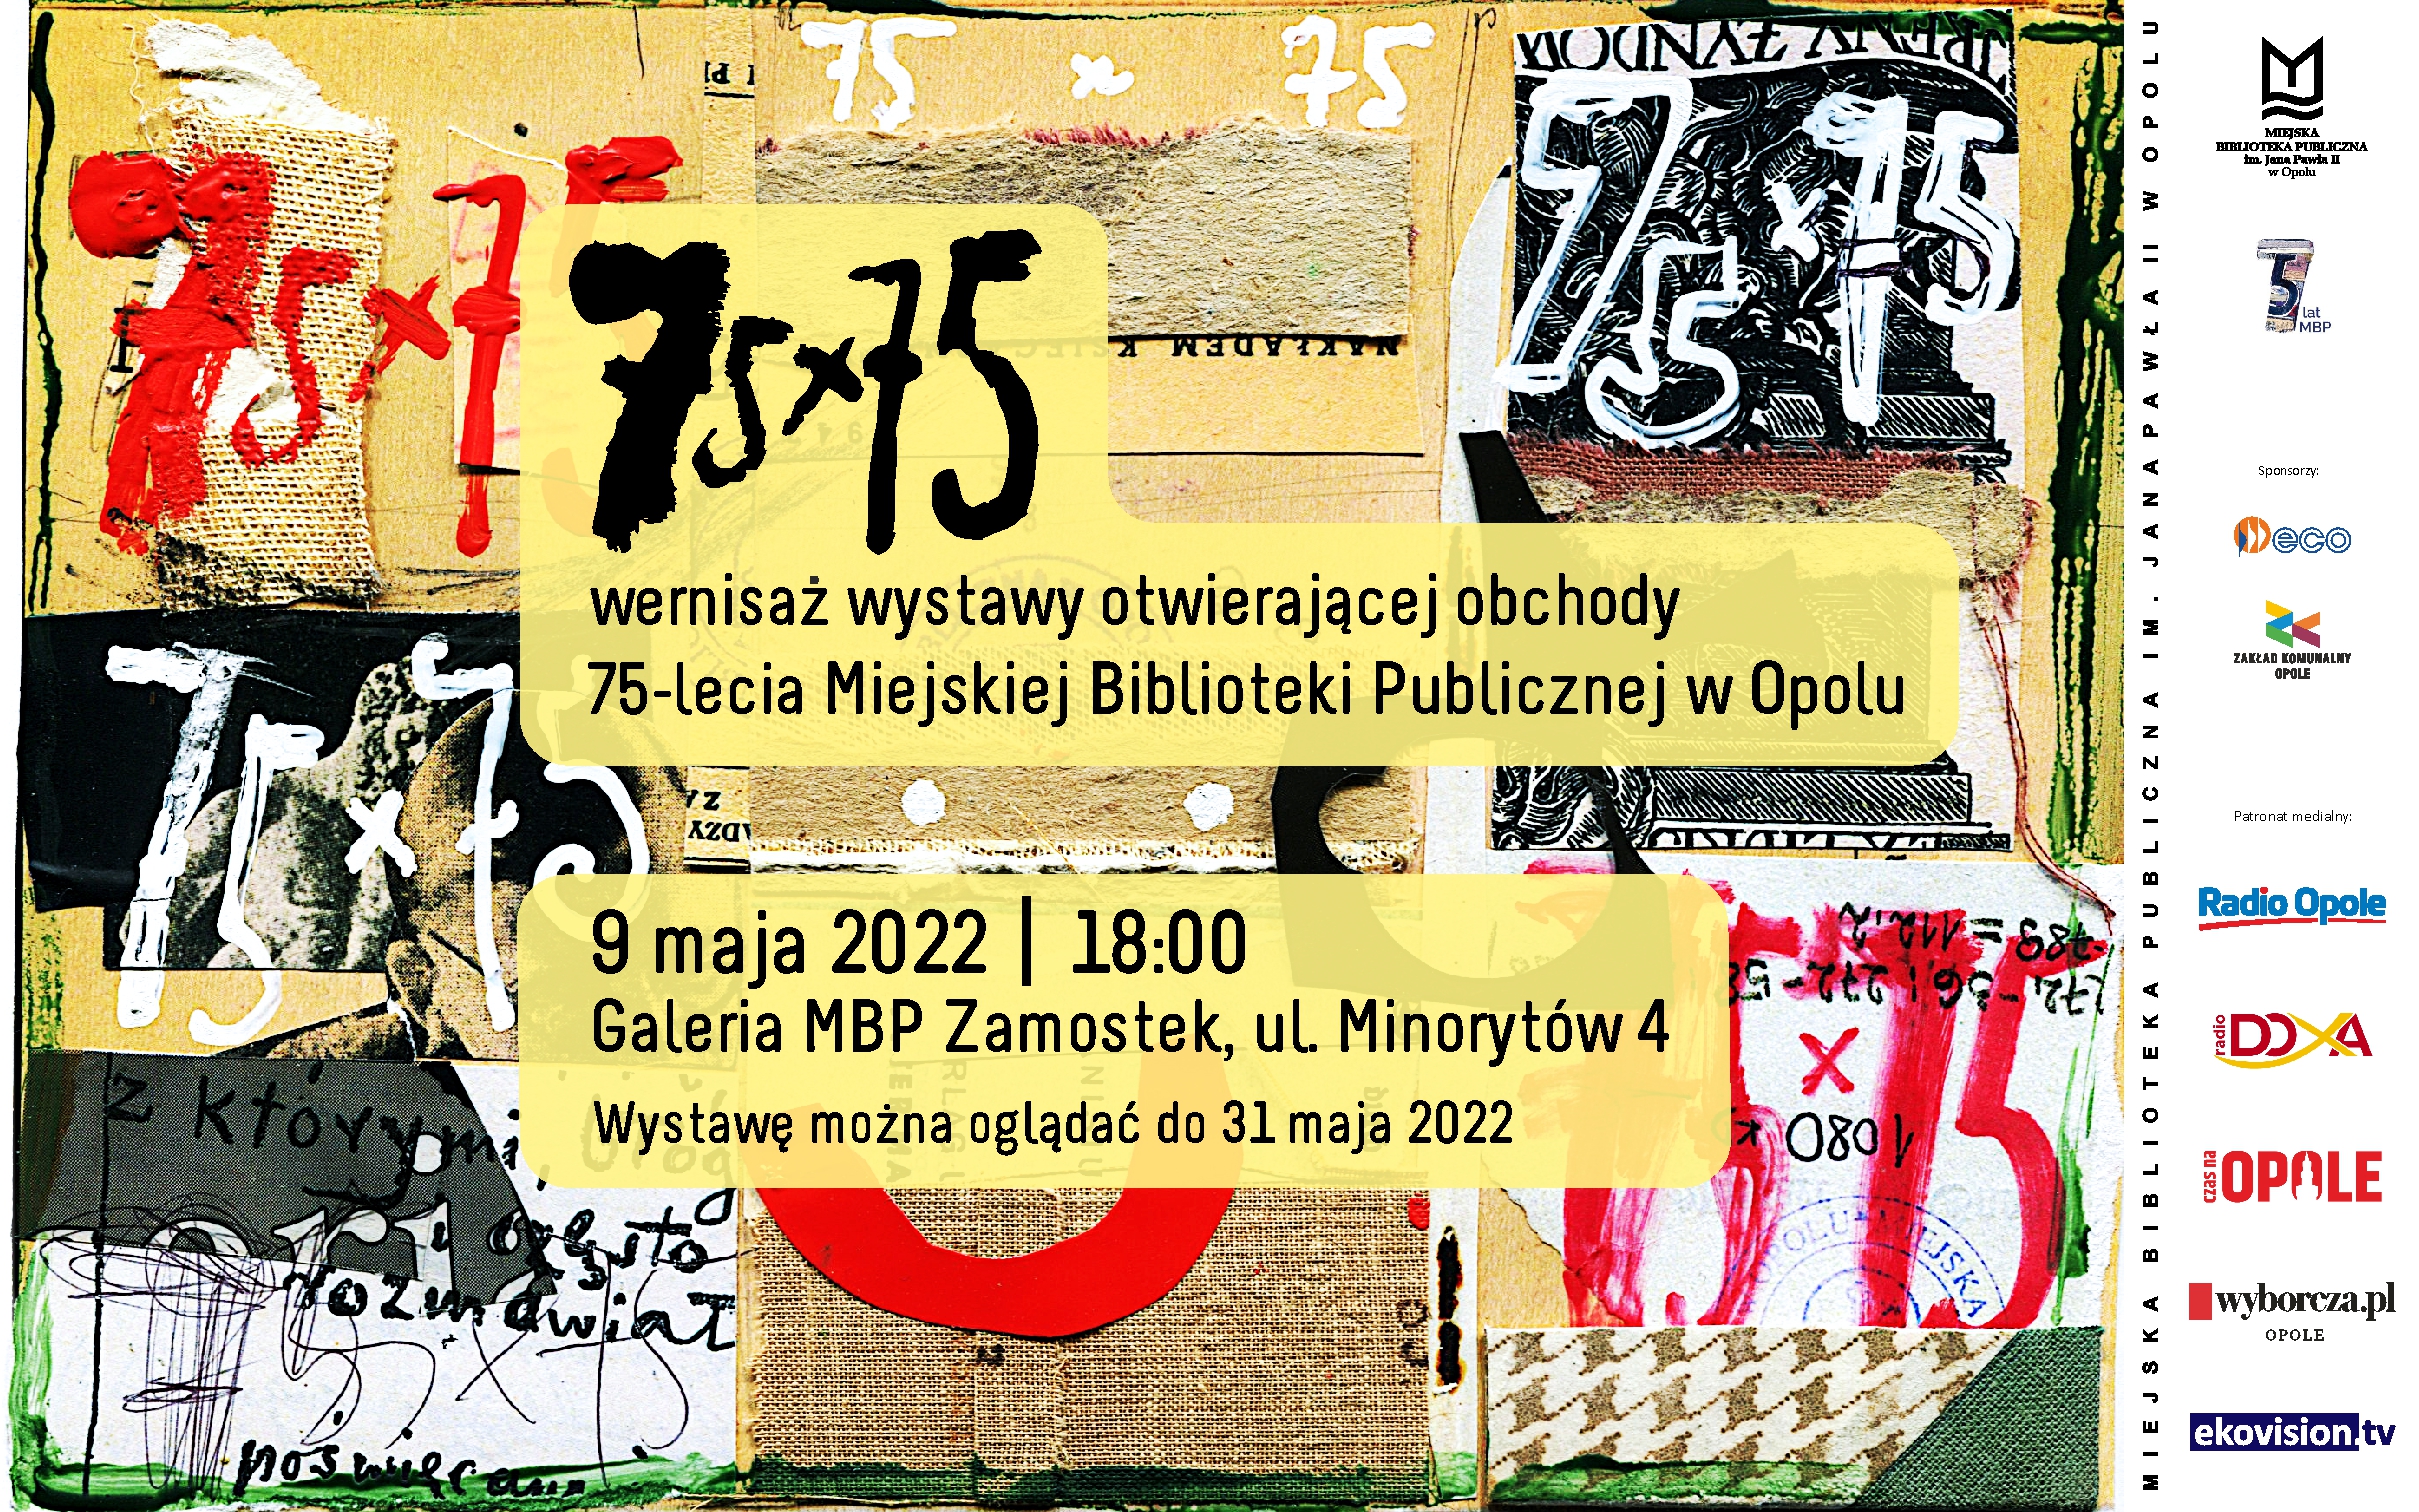 75x75 – wernisaż wystawy otwierającej obchody 75-lecia Miejskiej Biblioteki Publicznej w Opolu